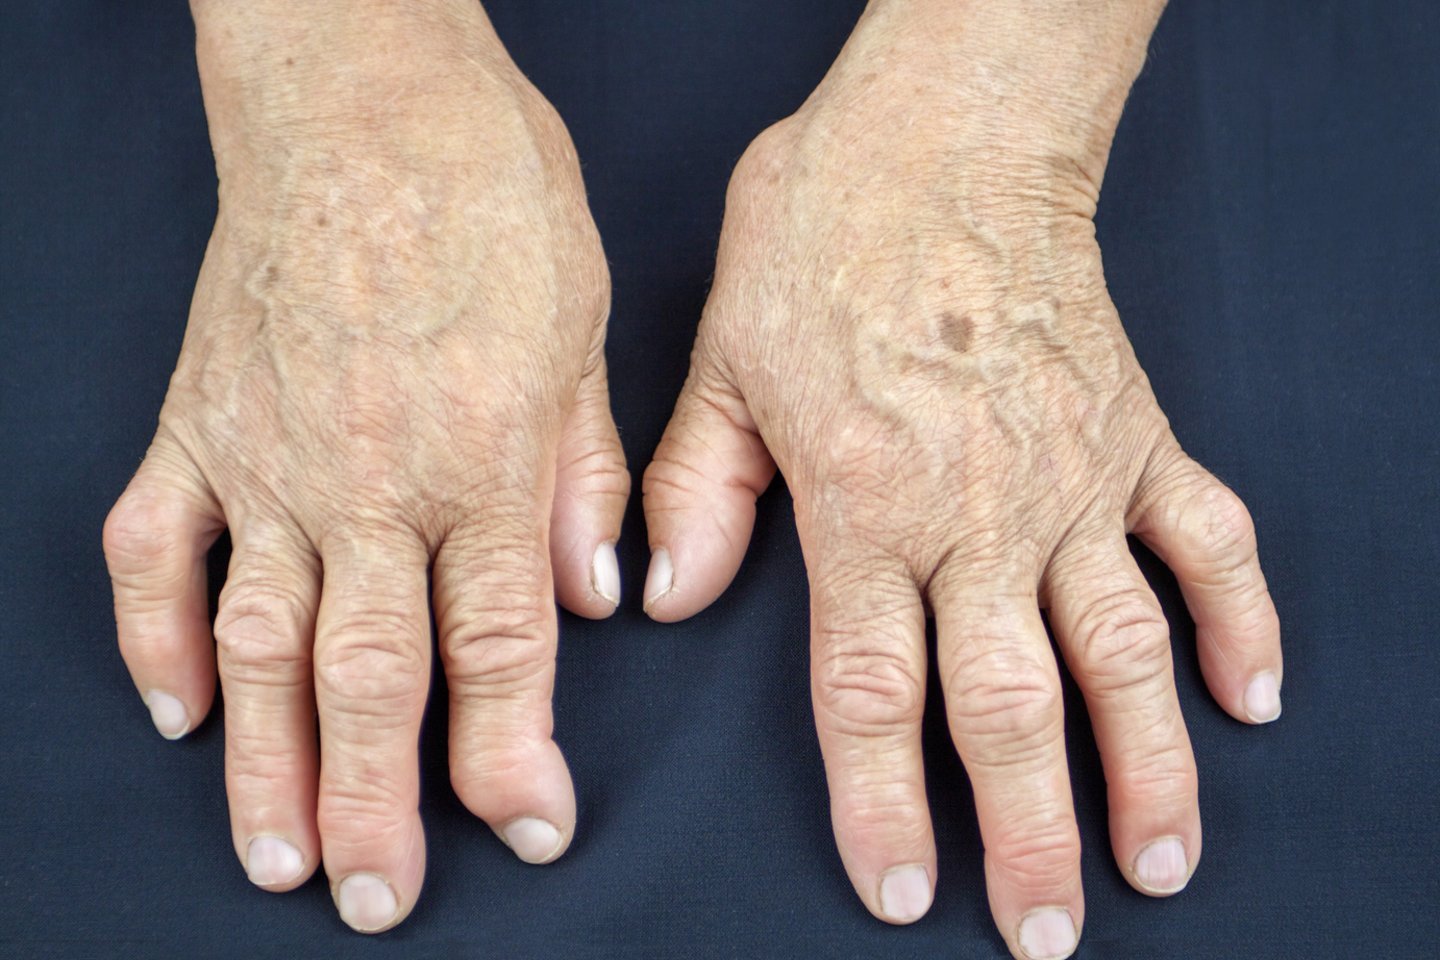 kaip artrito gydymui užsienyje ar į rankas sąnariai būti sėjami osteochondrozės metu